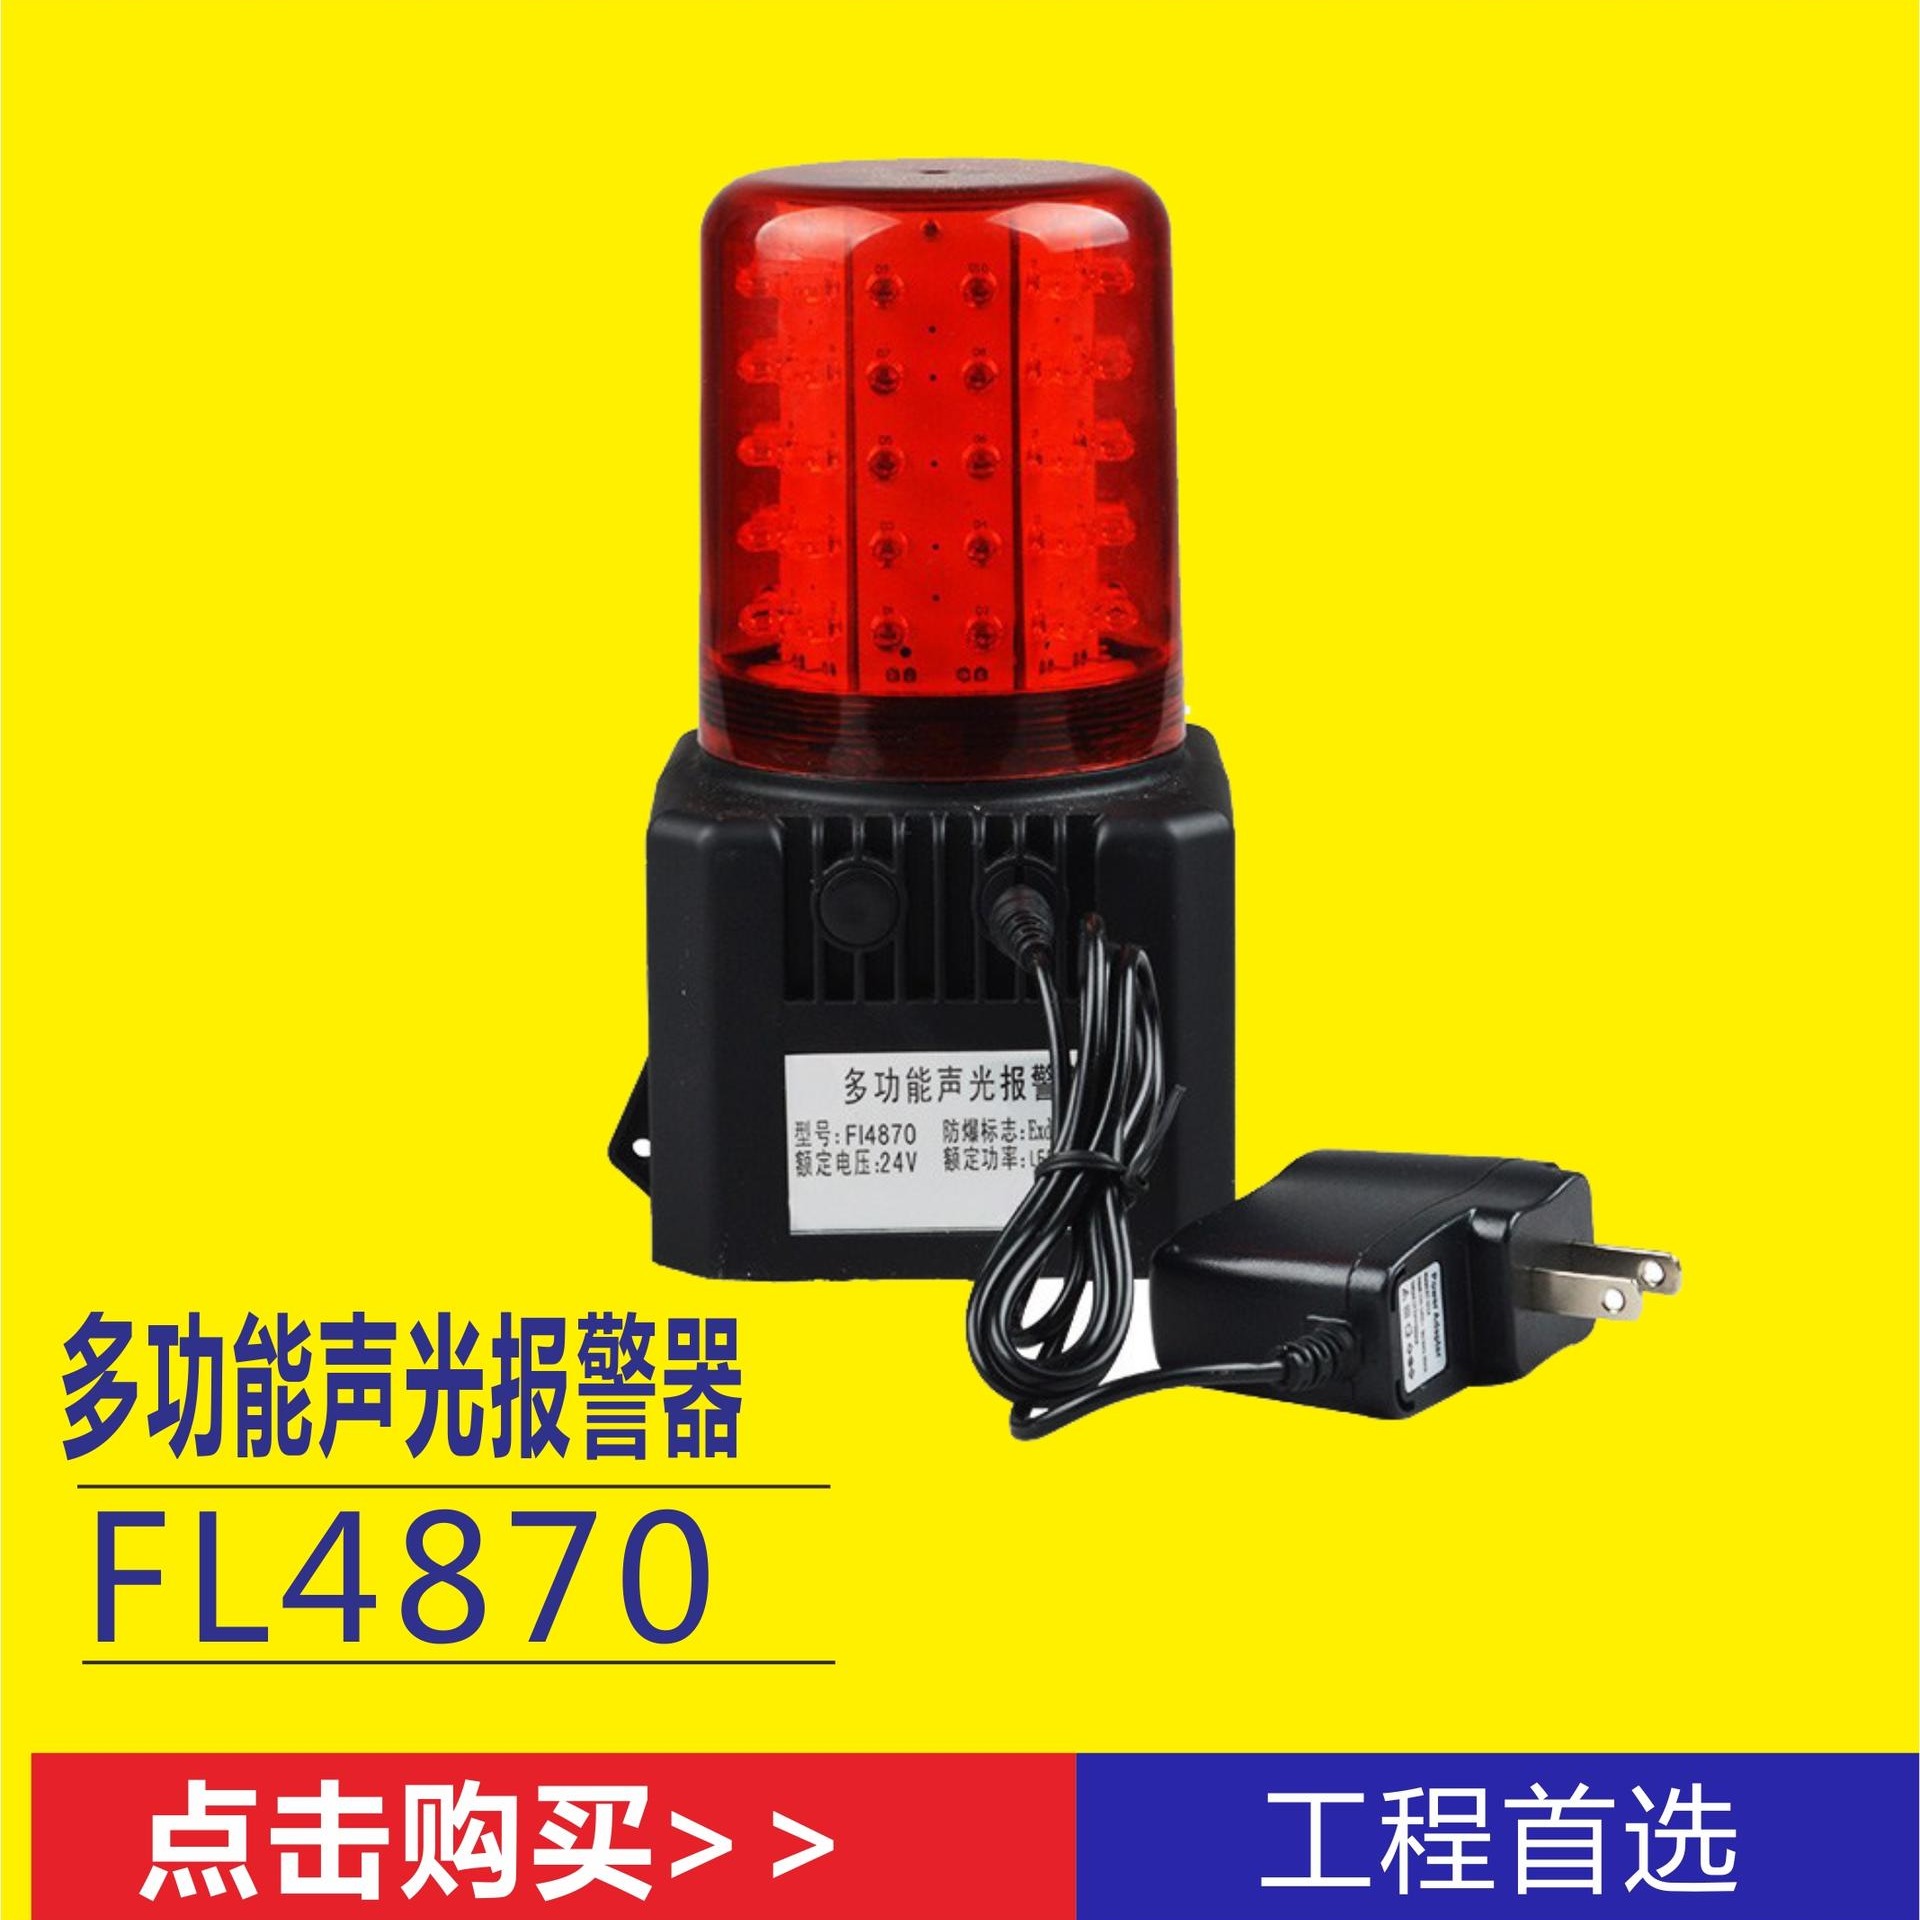 BQ2701强力吸附底座信号指示灯 带声音呼叫信号指示器 各种抢险施工场所安全信号灯 交通运输业新型红色LED灯图片